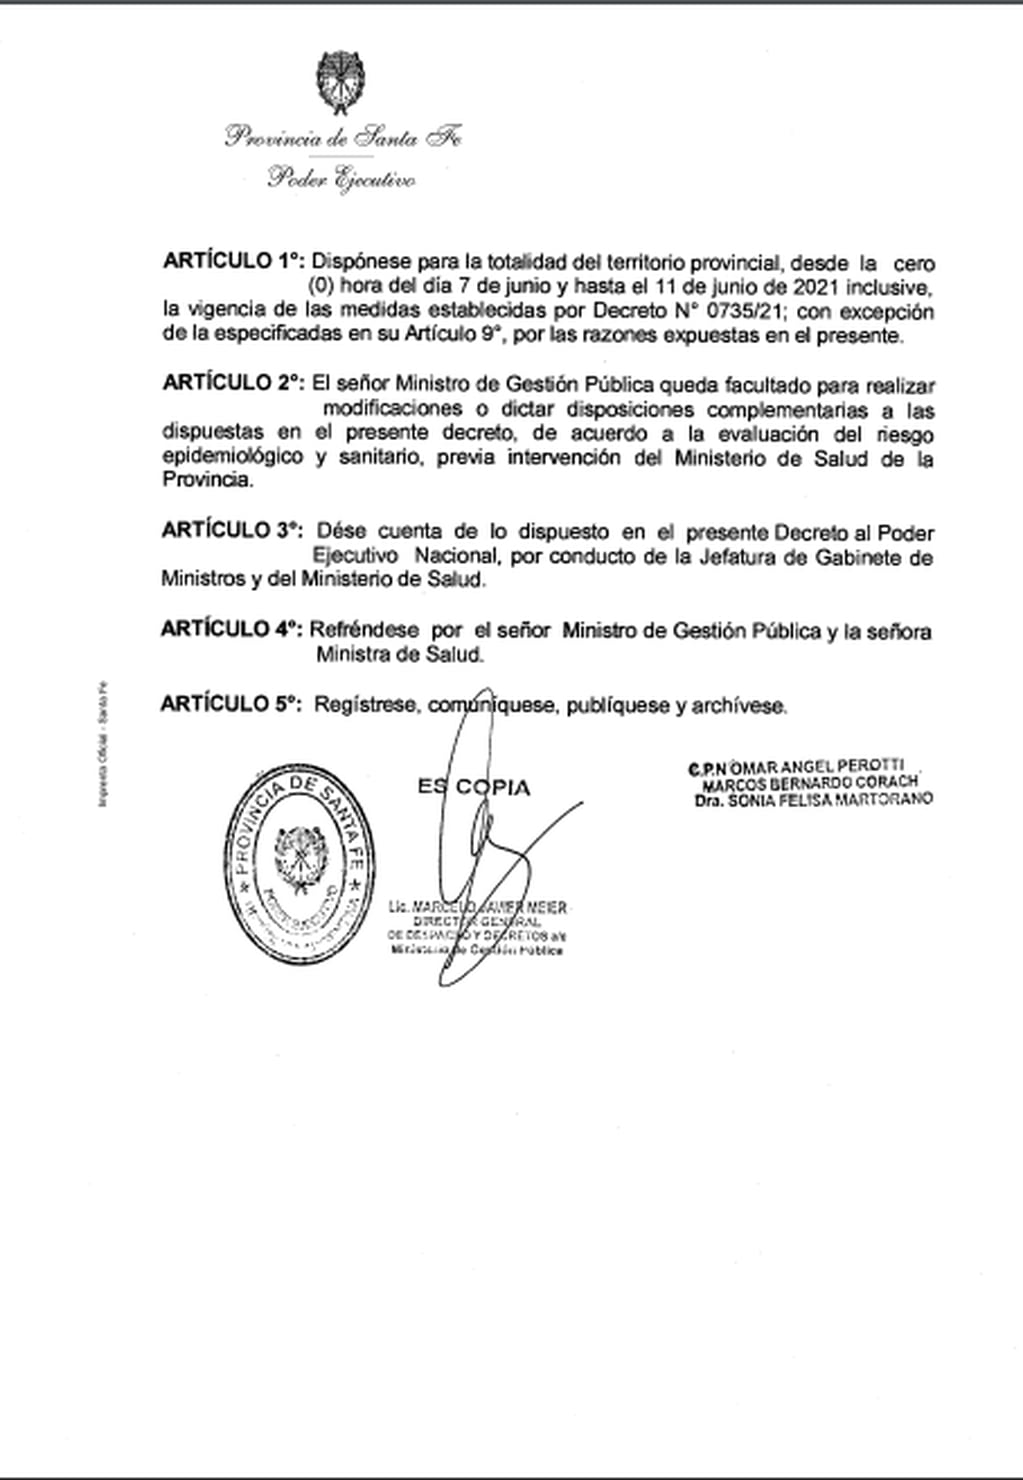 Renovación del decreto para no presencialidad en las aulas hasta el 11 de junio. Gobierno de Santa Fe.